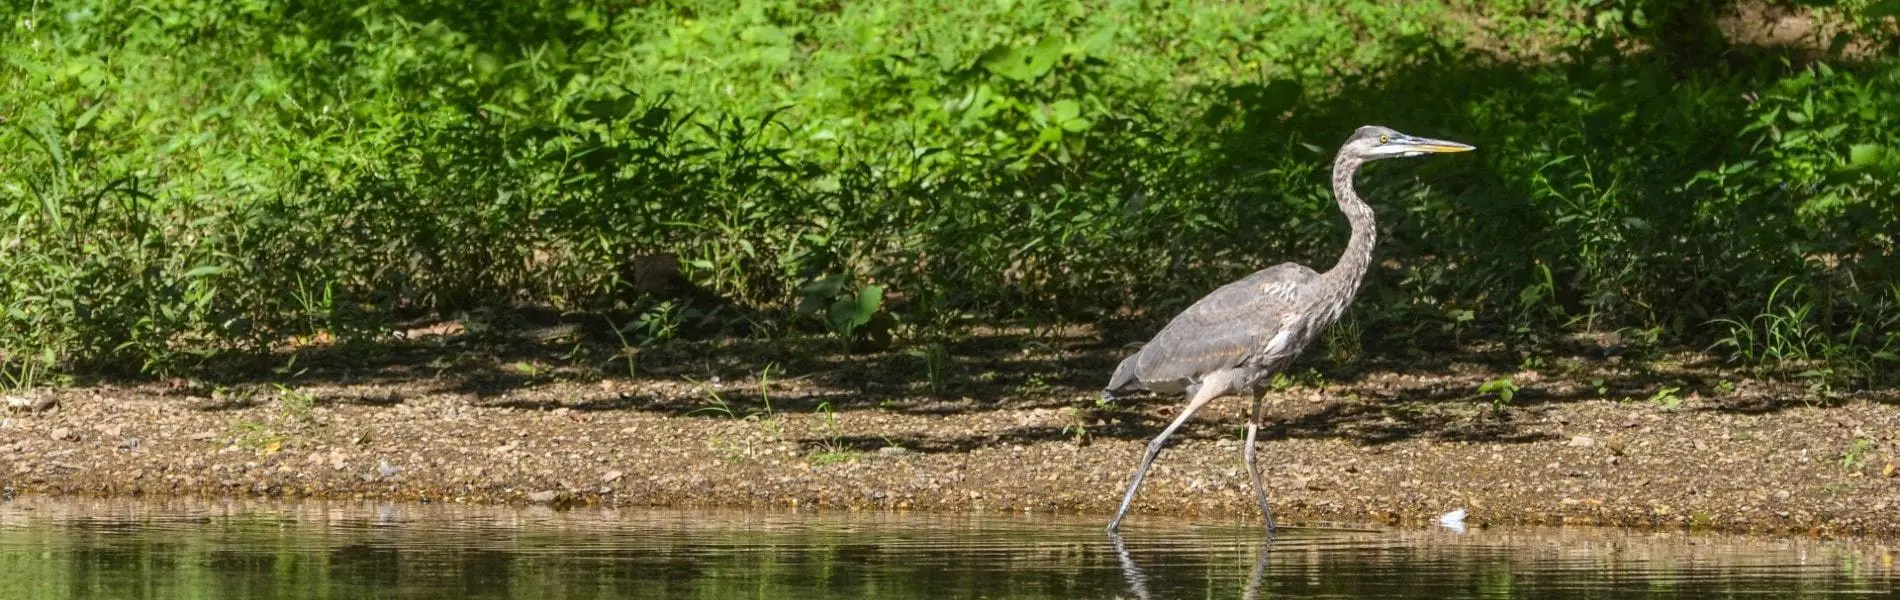 blue heron in marshy area near long neck, delaware